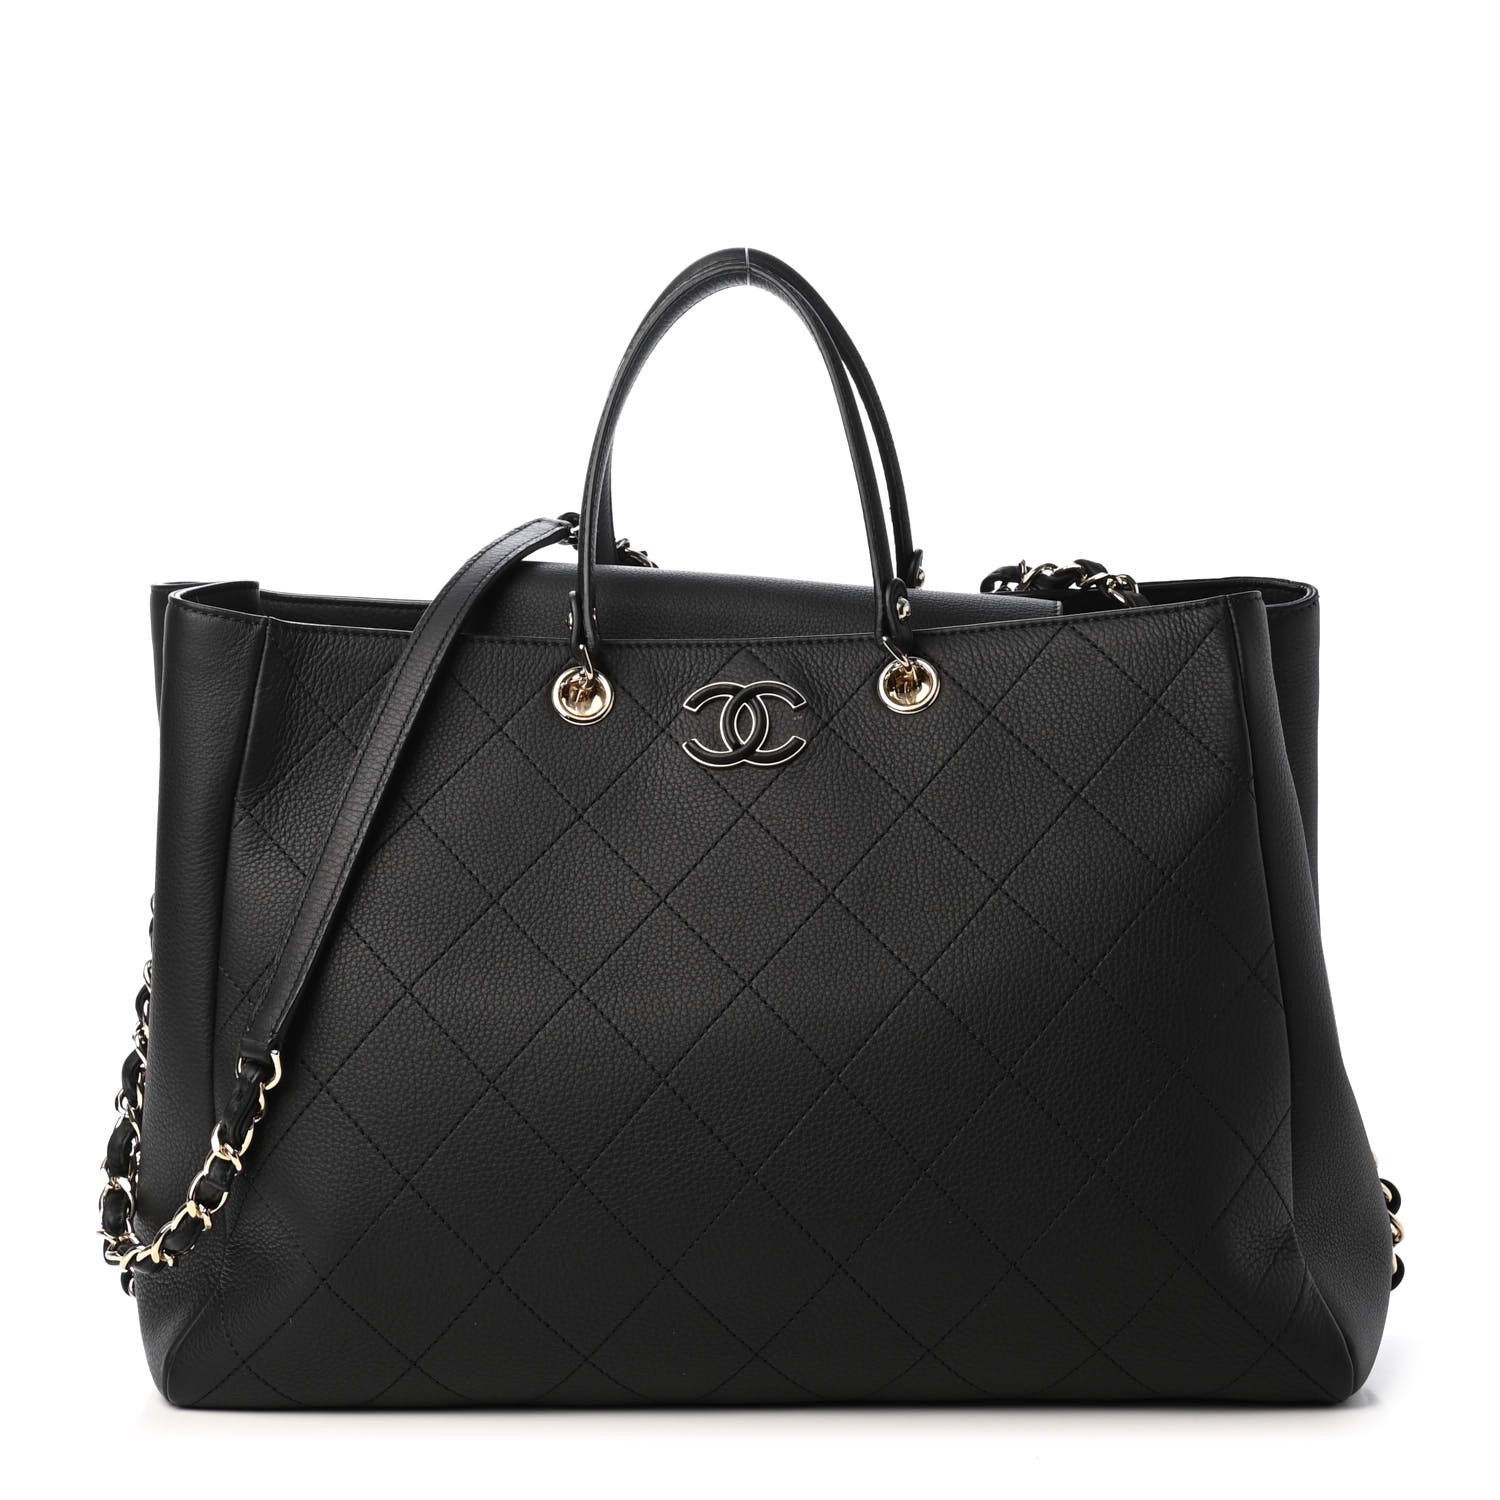 CHANEL Bullskin Stitched Large Shopping Bag Black | FASHIONPHILE | Fashionphile